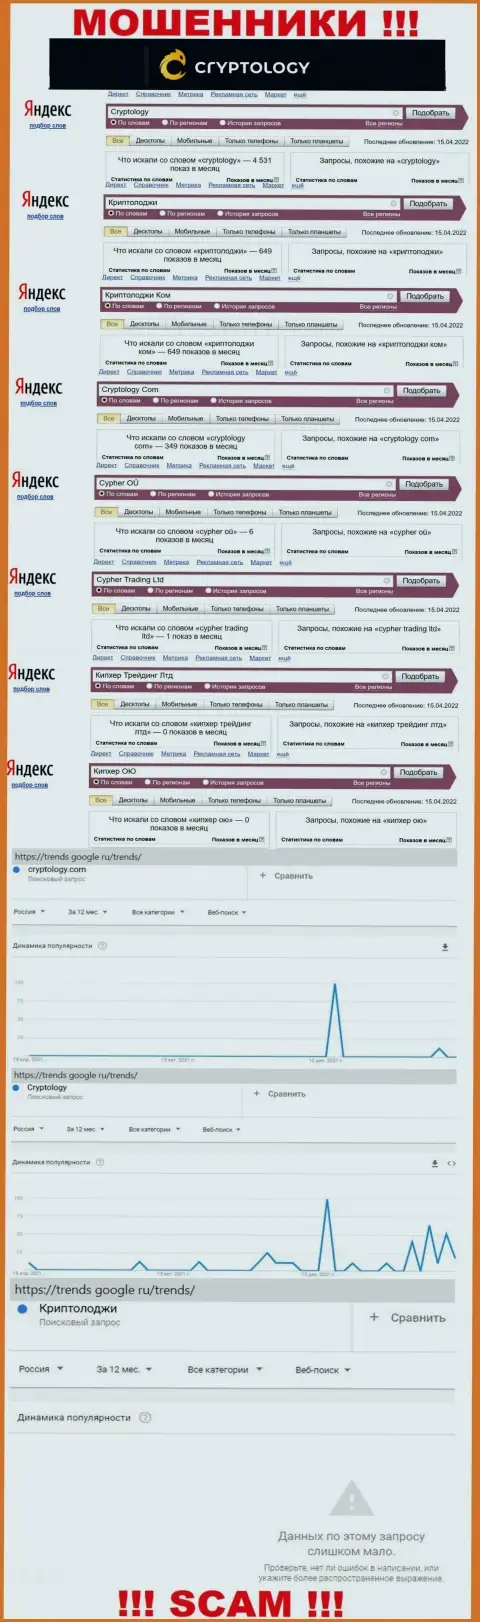 Количество online-запросов в поисковиках сети internet по бренду мошенников Криптолоджи Ком